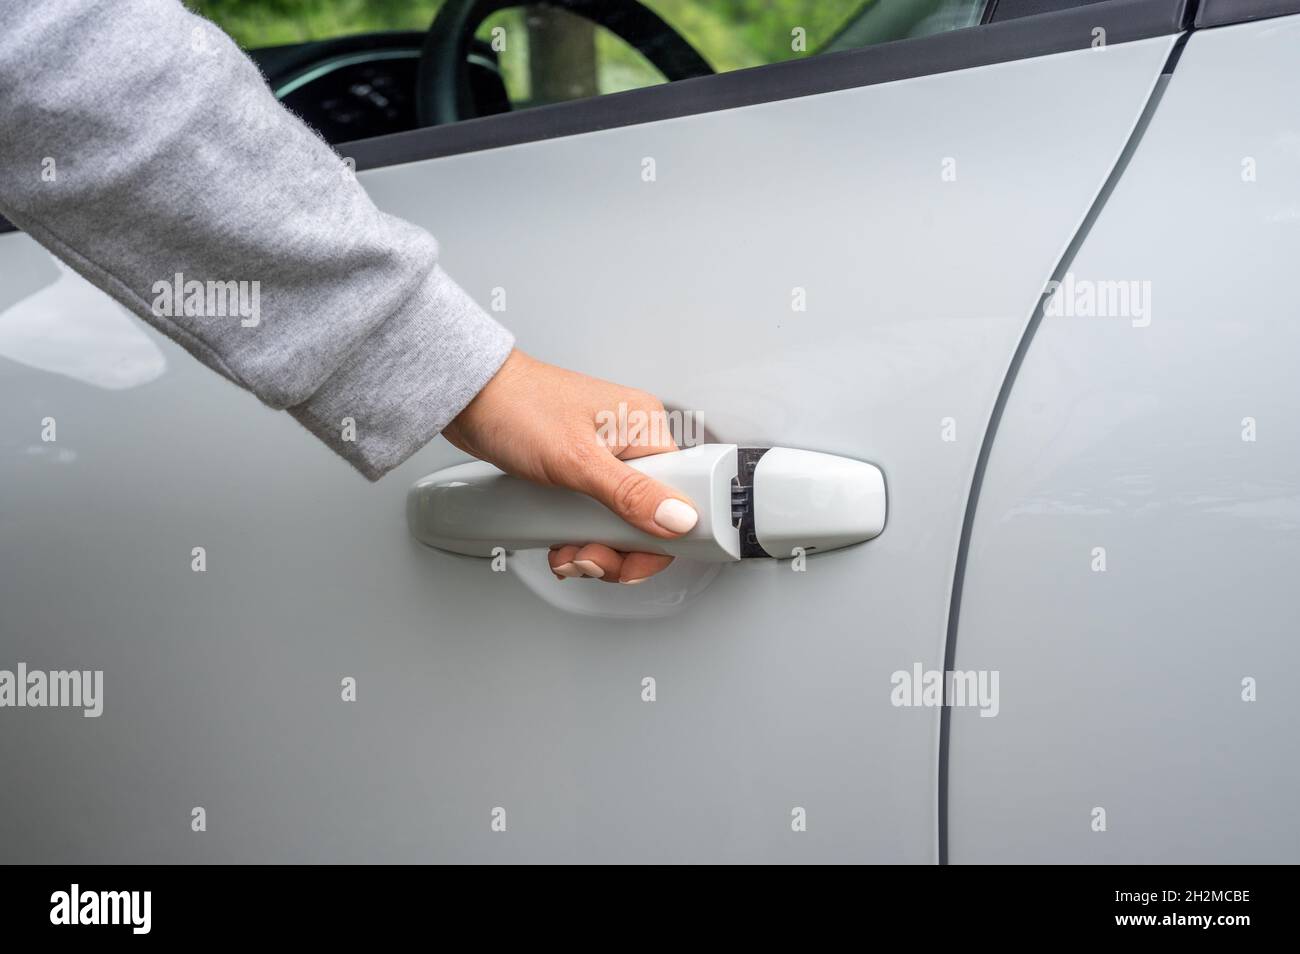 Hand Ziehen Auto Innentür Griff öffnen Auto Tür. Stockbild - Bild von  mechaniker, mode: 219673819